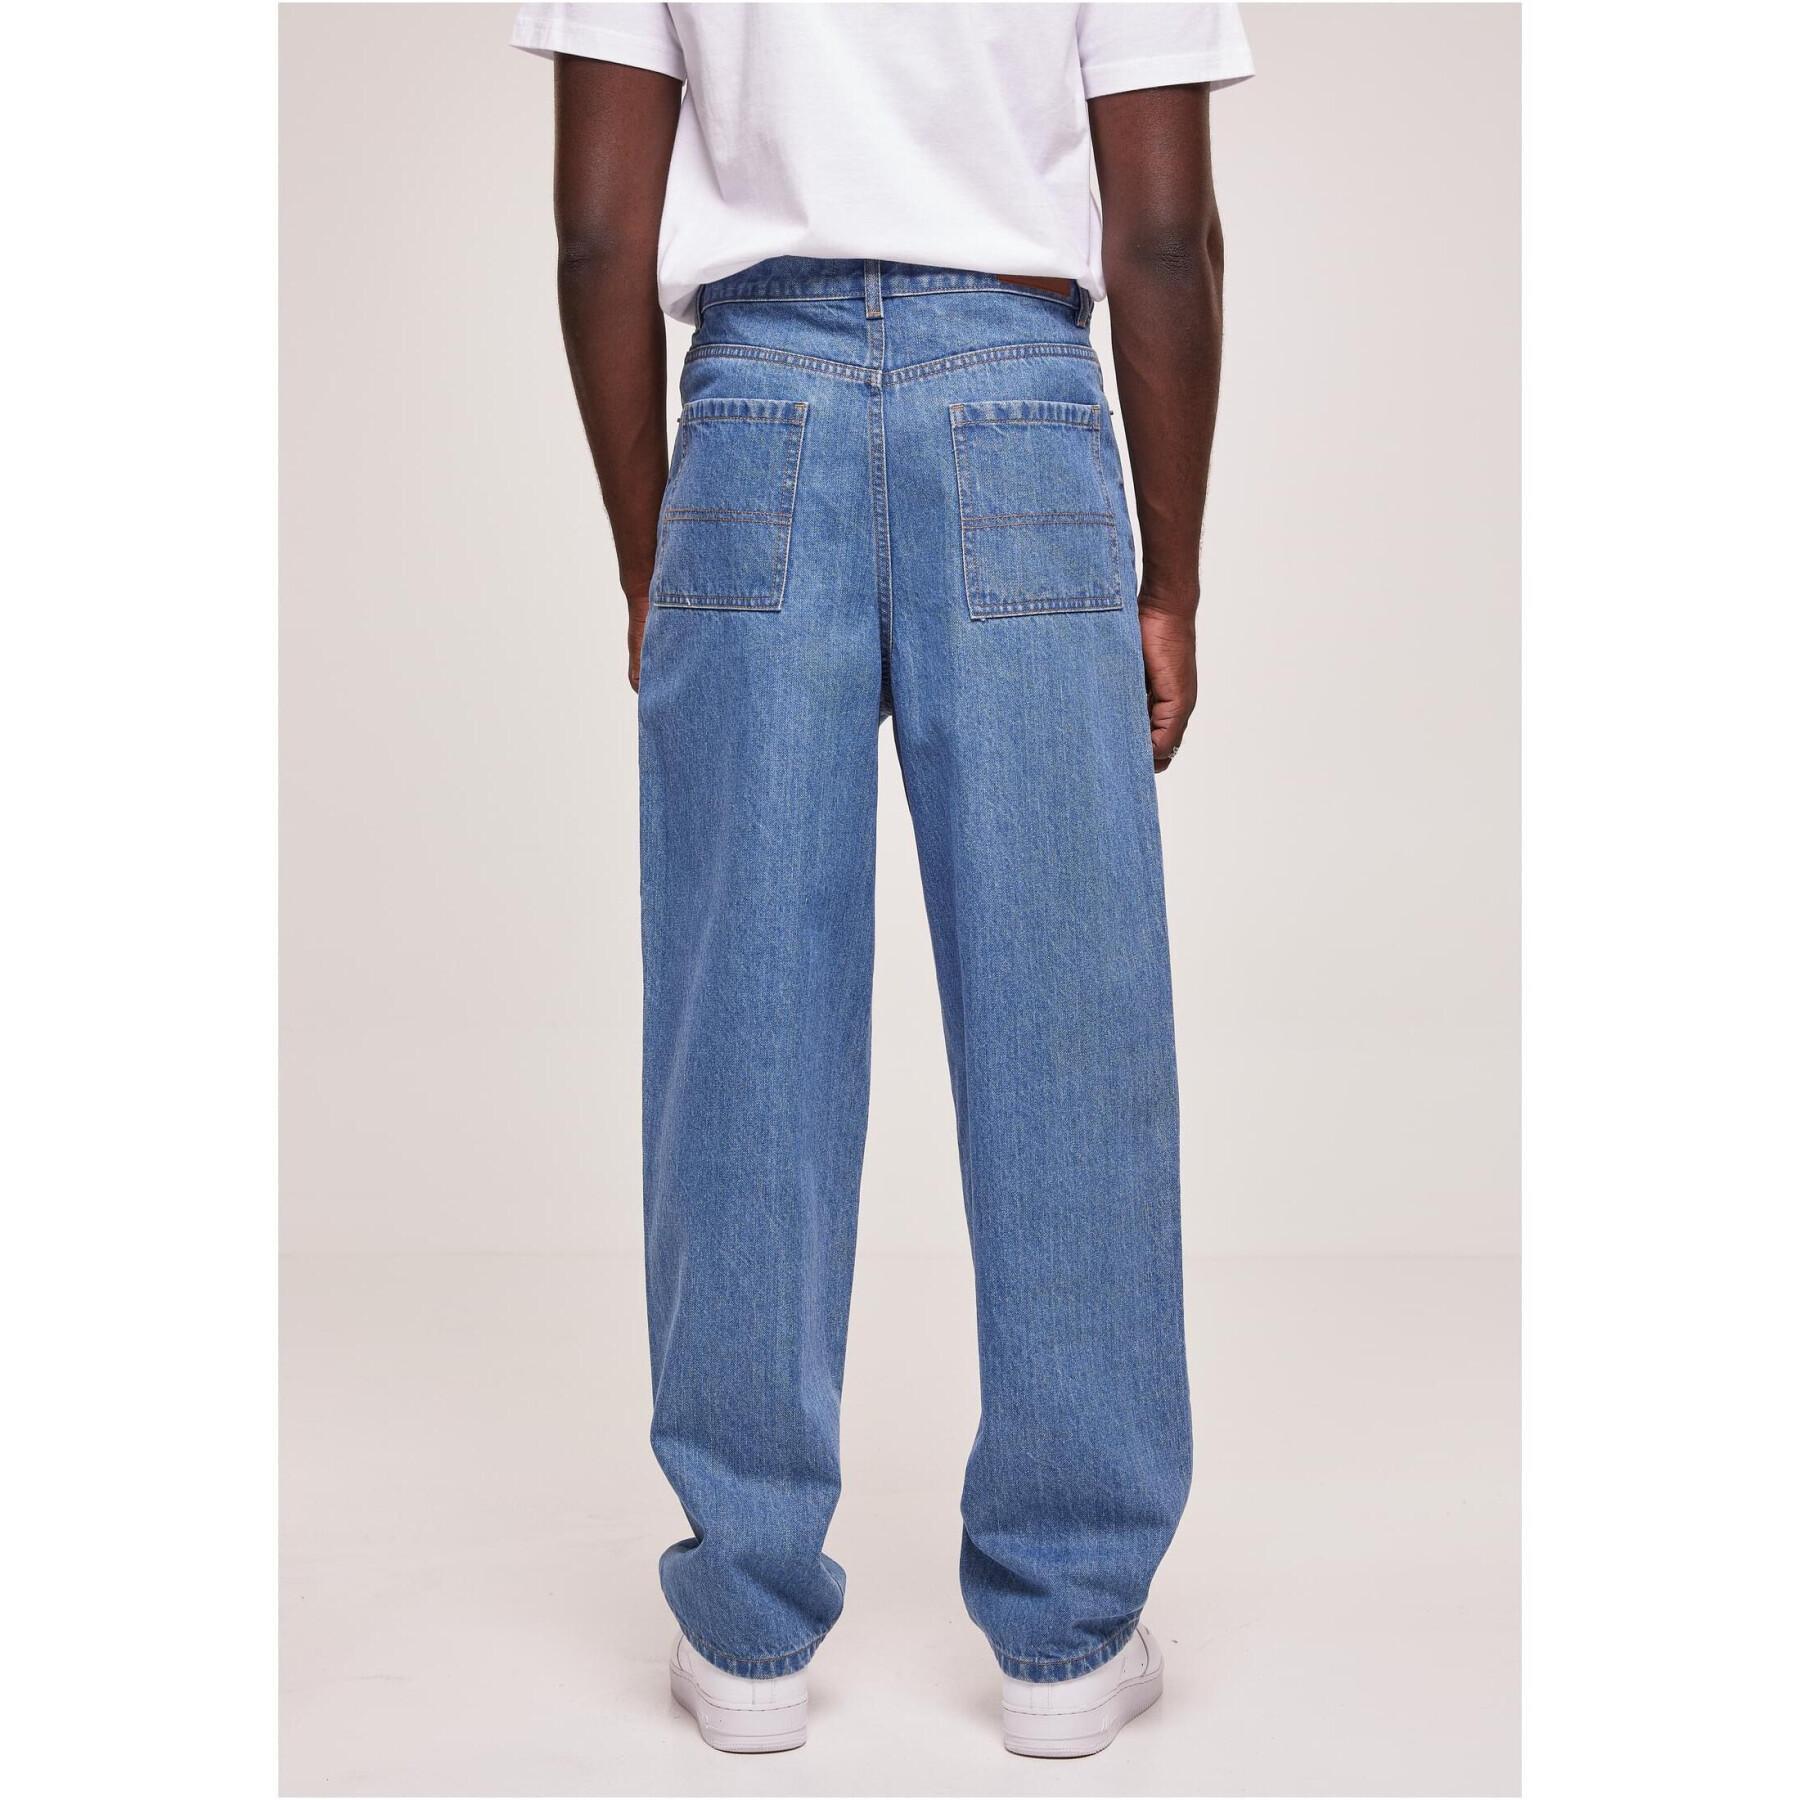 Jeans taglie grandi Urban Classics 90‘s